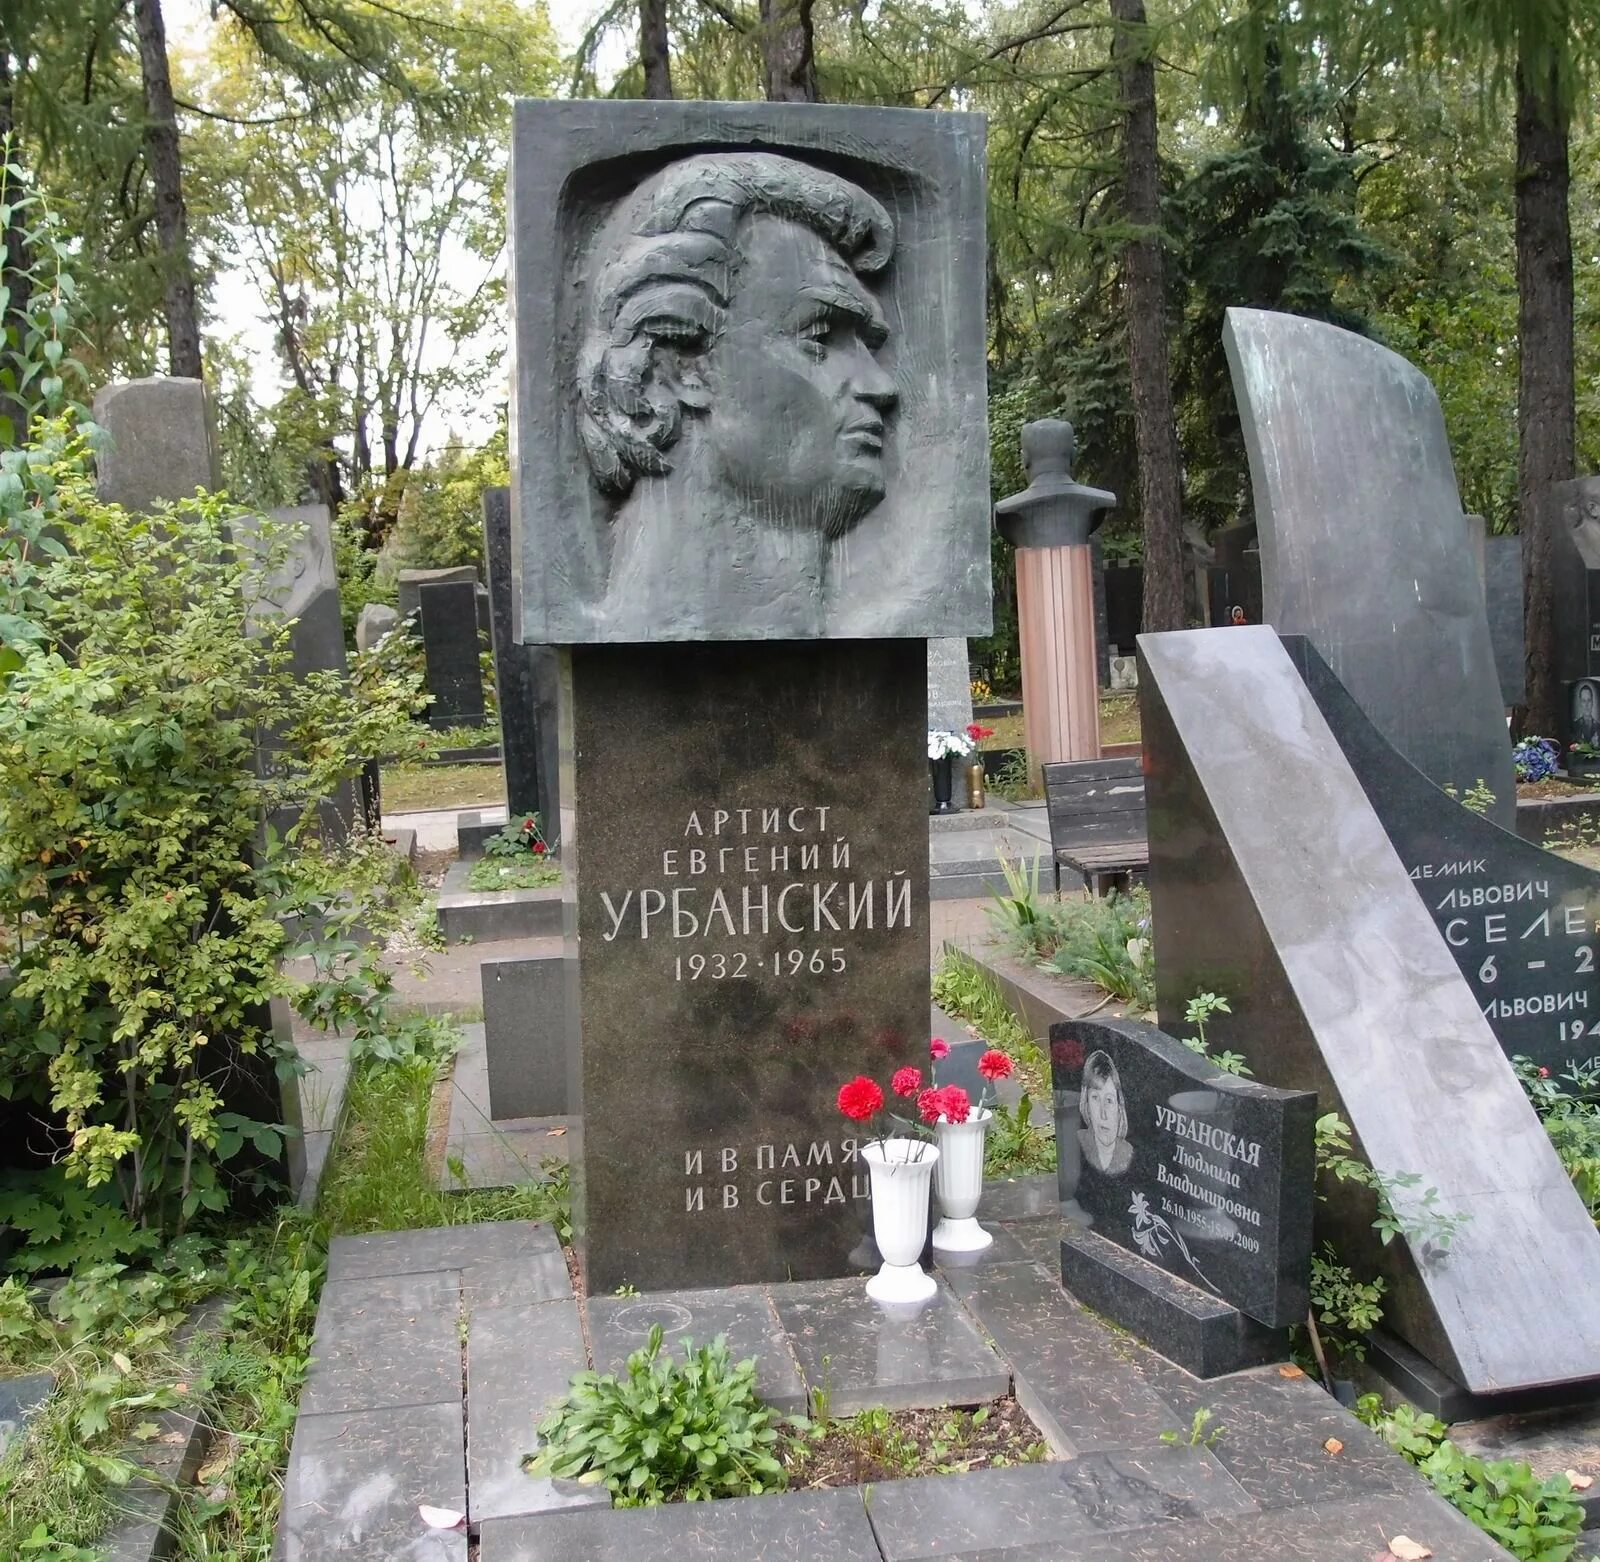 Леонов похоронен. Урбанский могила на Новодевичьем. Могила Урбанского на Новодевичьем кладбище.